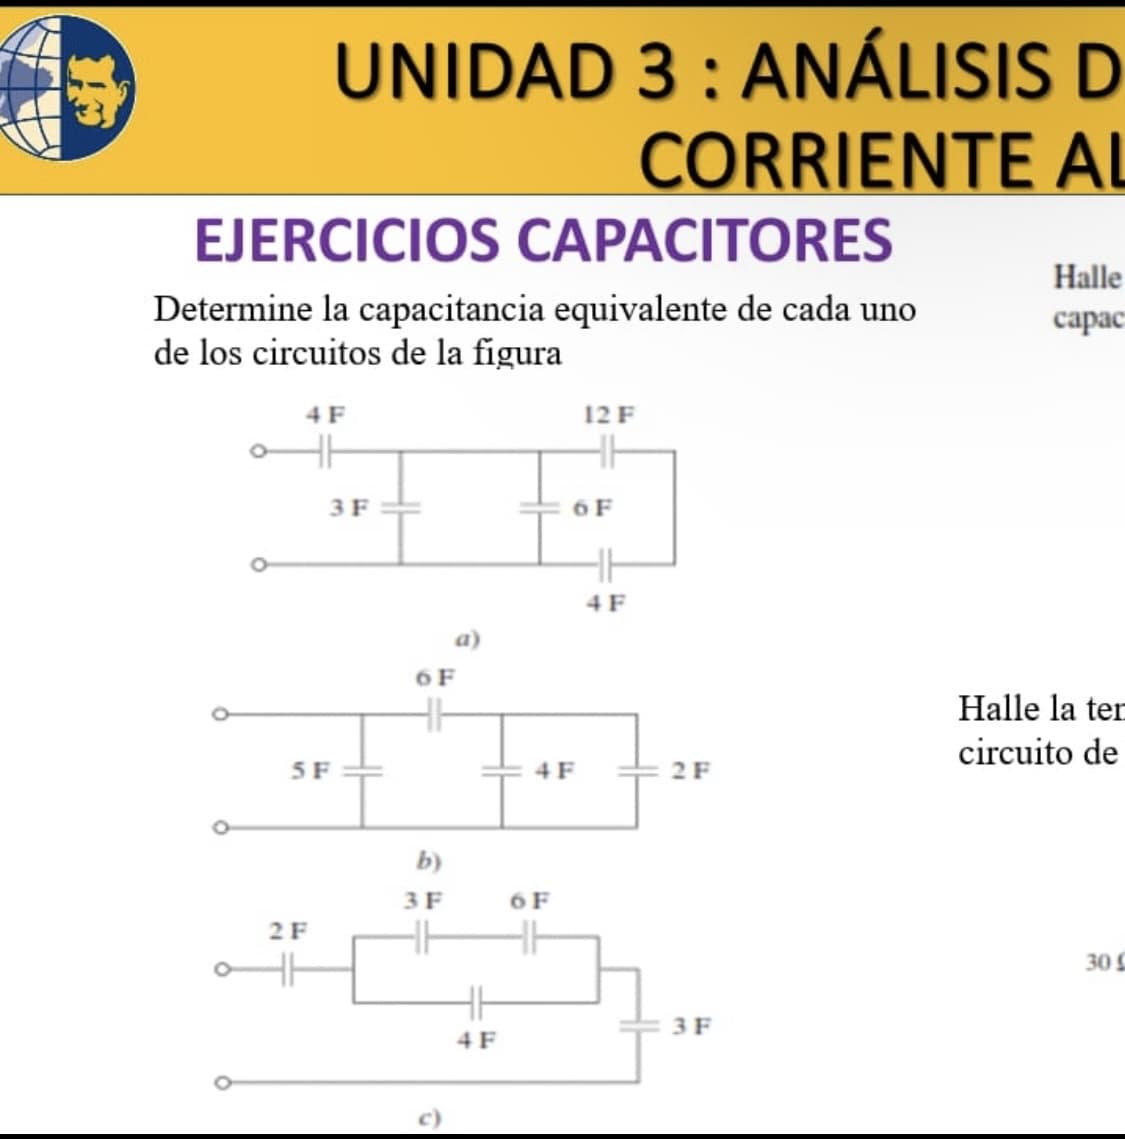 EJERCICIOS CAPACITORES
Determine la capacitancia equivalente de cada uno
de los circuitos de la figura
UNIDAD 3: ANÁLISIS D
CORRIENTE AL
4 F
5 F
2 F
3 F
6 F
b)
3 F
HH
4 F
4 F
6 F
12 F
6 F
4 F
2 F
3 F
Halle
capac
Halle la ten
circuito de
30 C